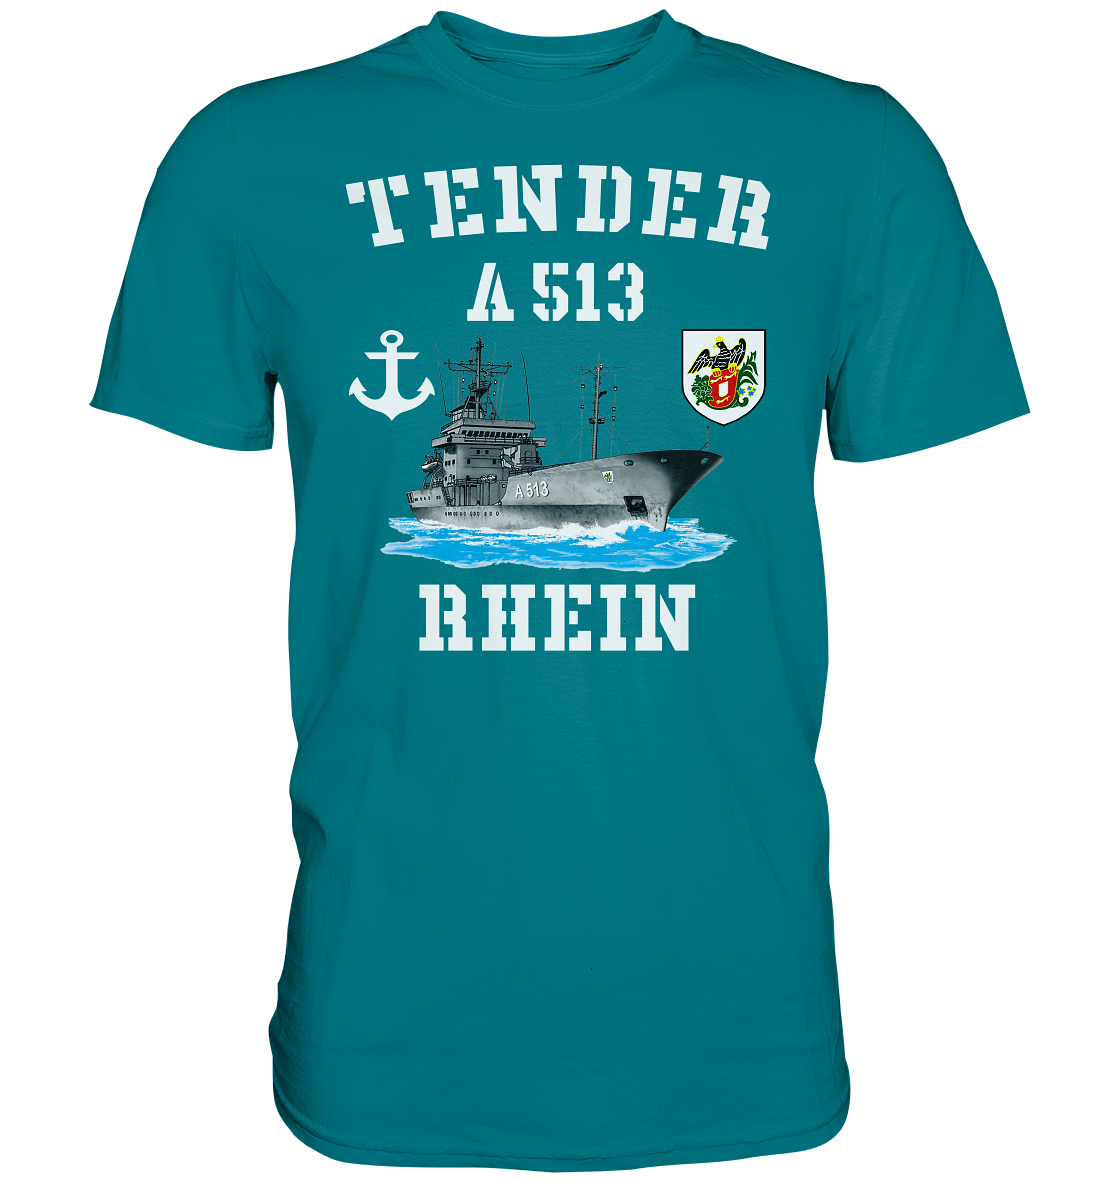 Tender A513 RHEIN Anker - Premium Shirt